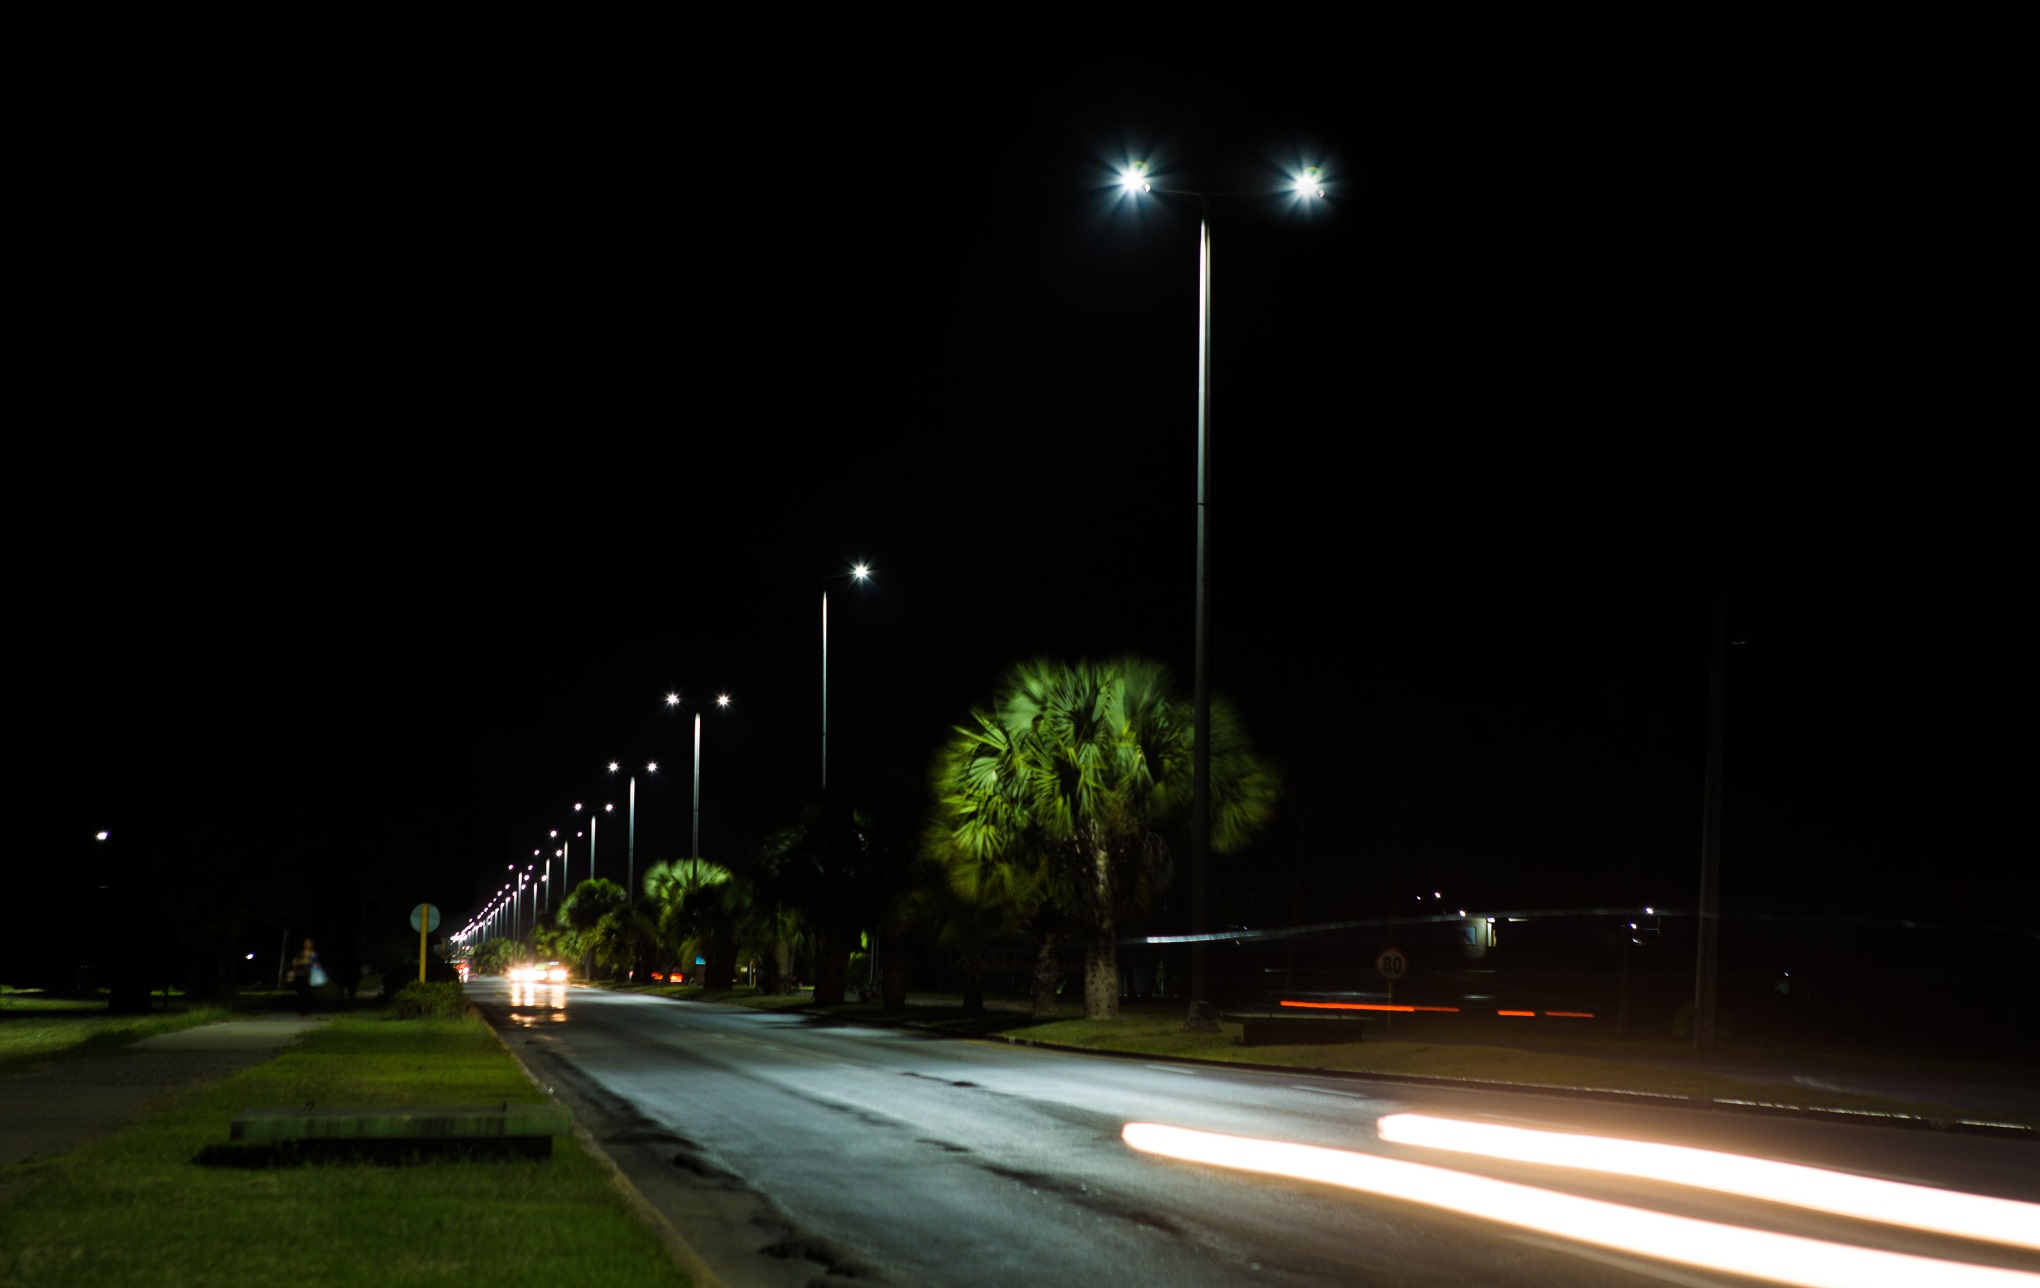 LED lamp lighting system